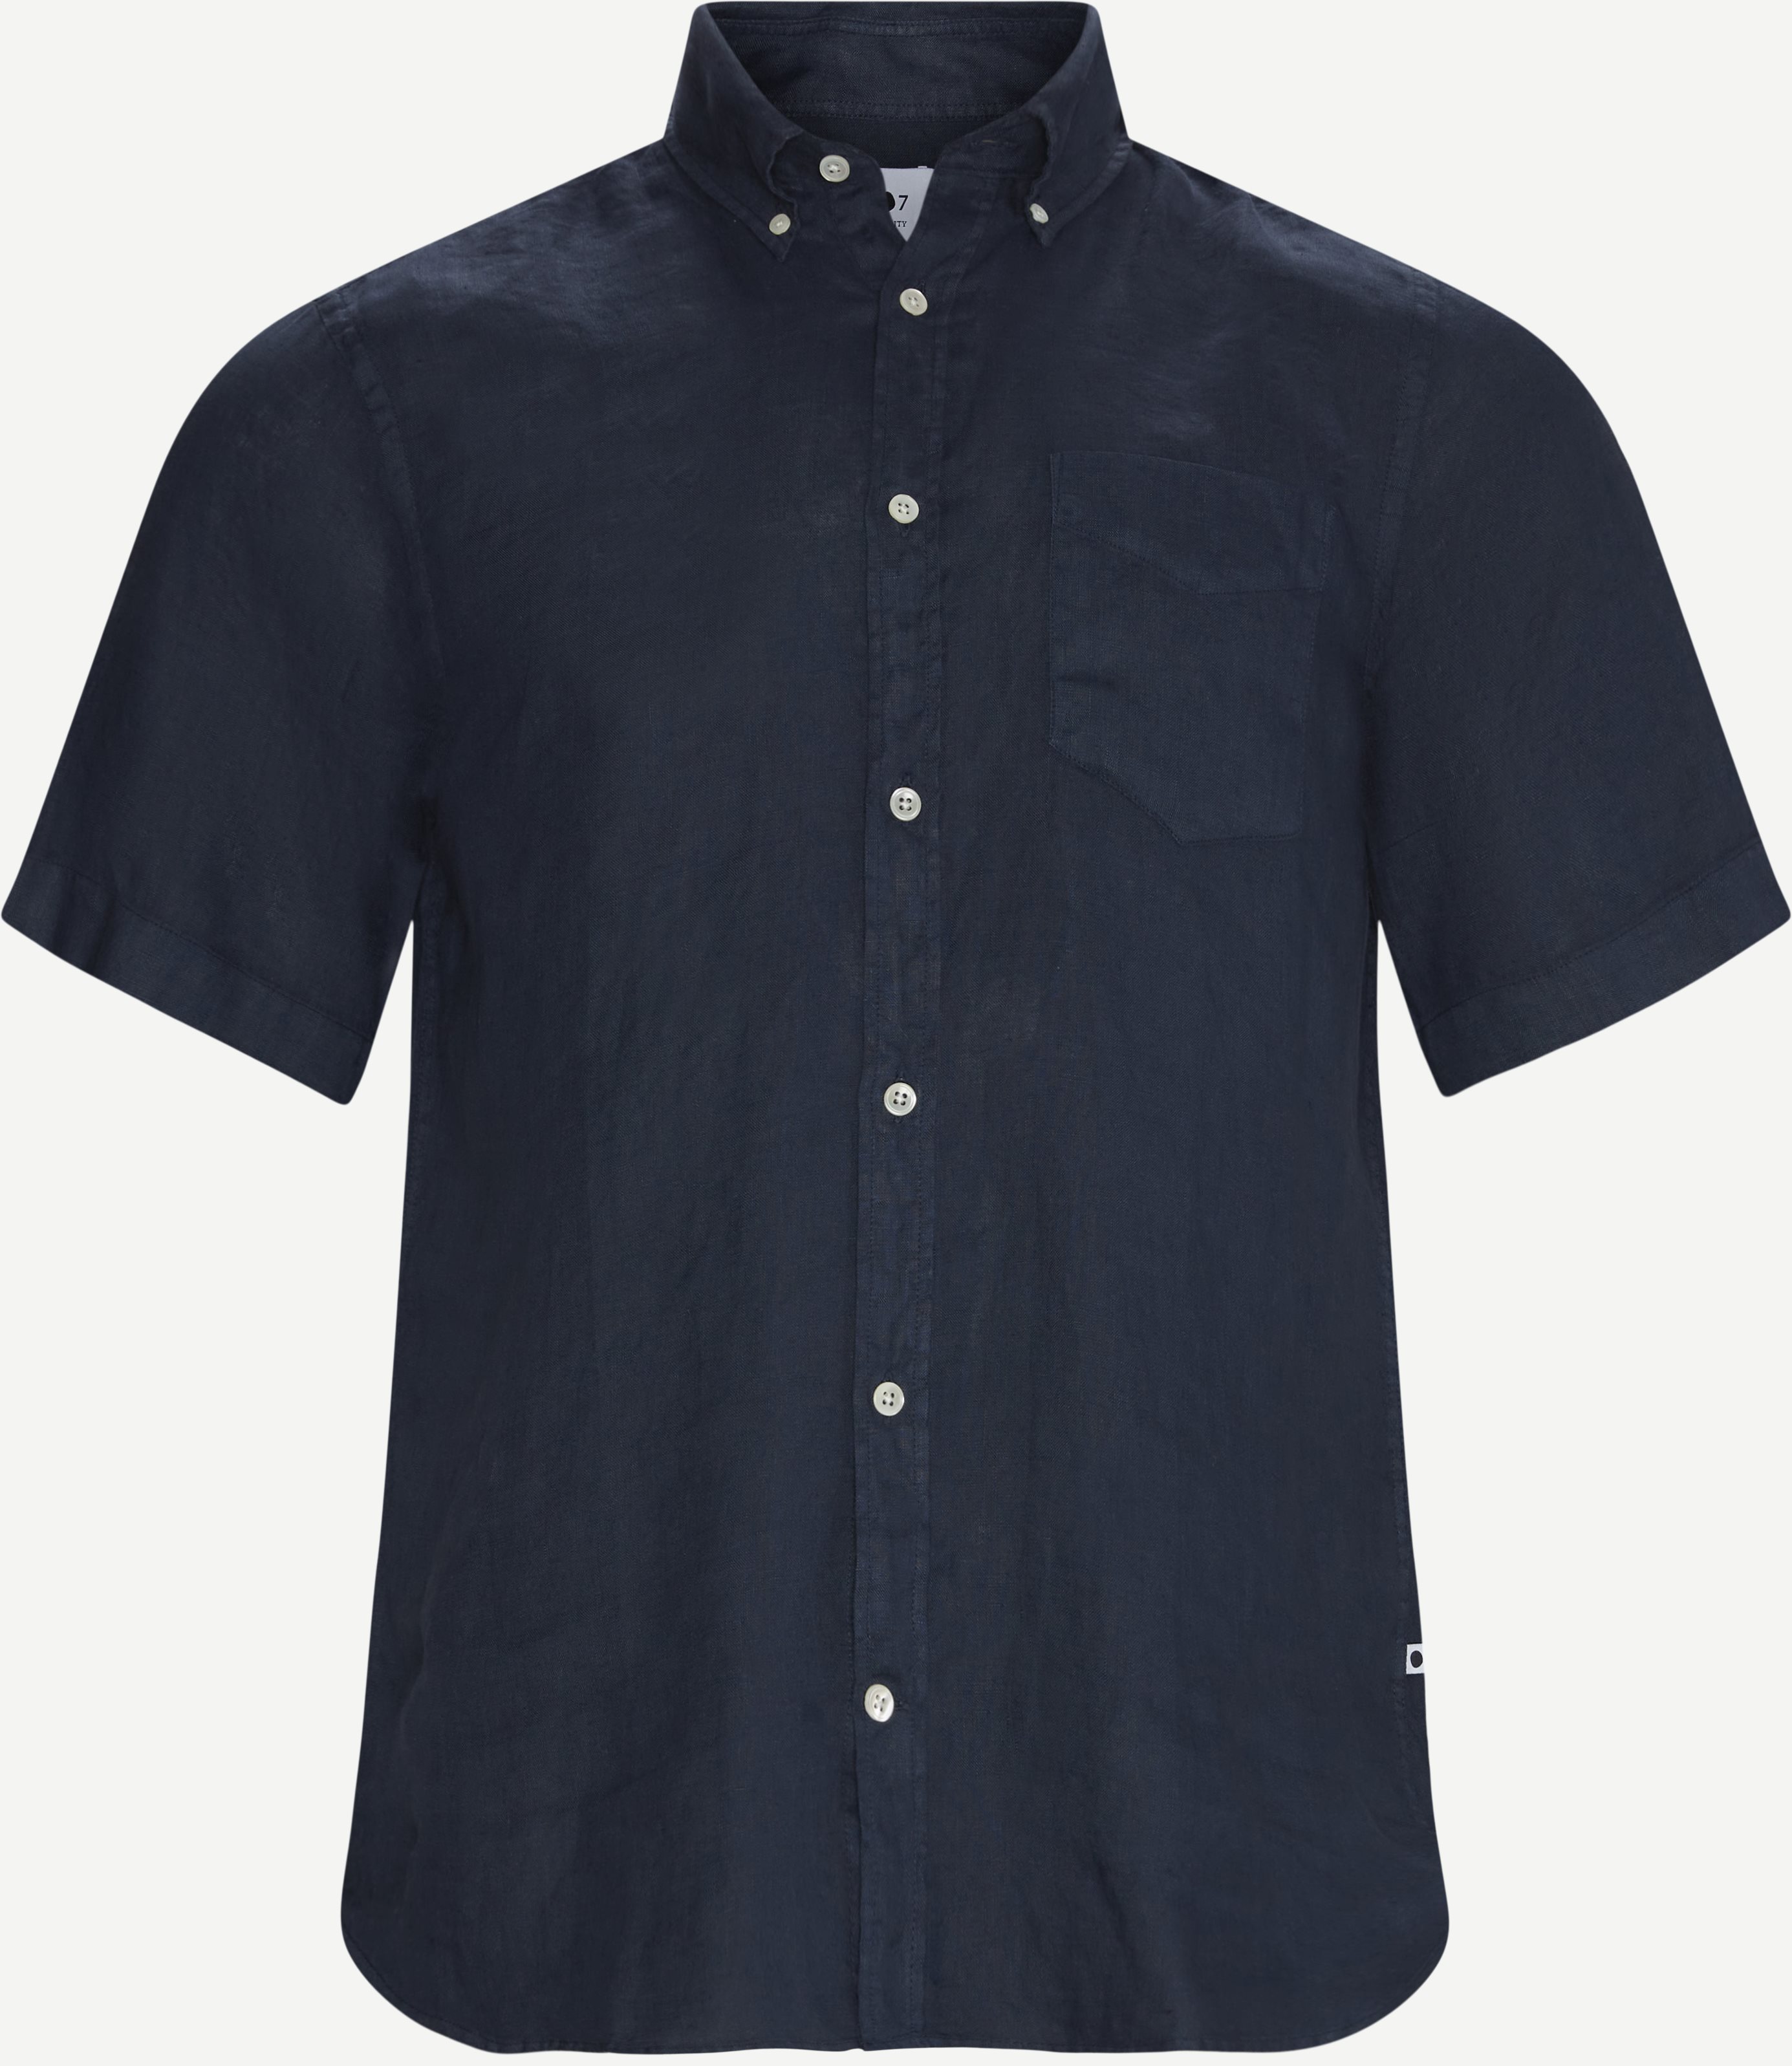 Tyrion K/Æ Skjorte - Short-sleeved shirts - Regular fit - Blue